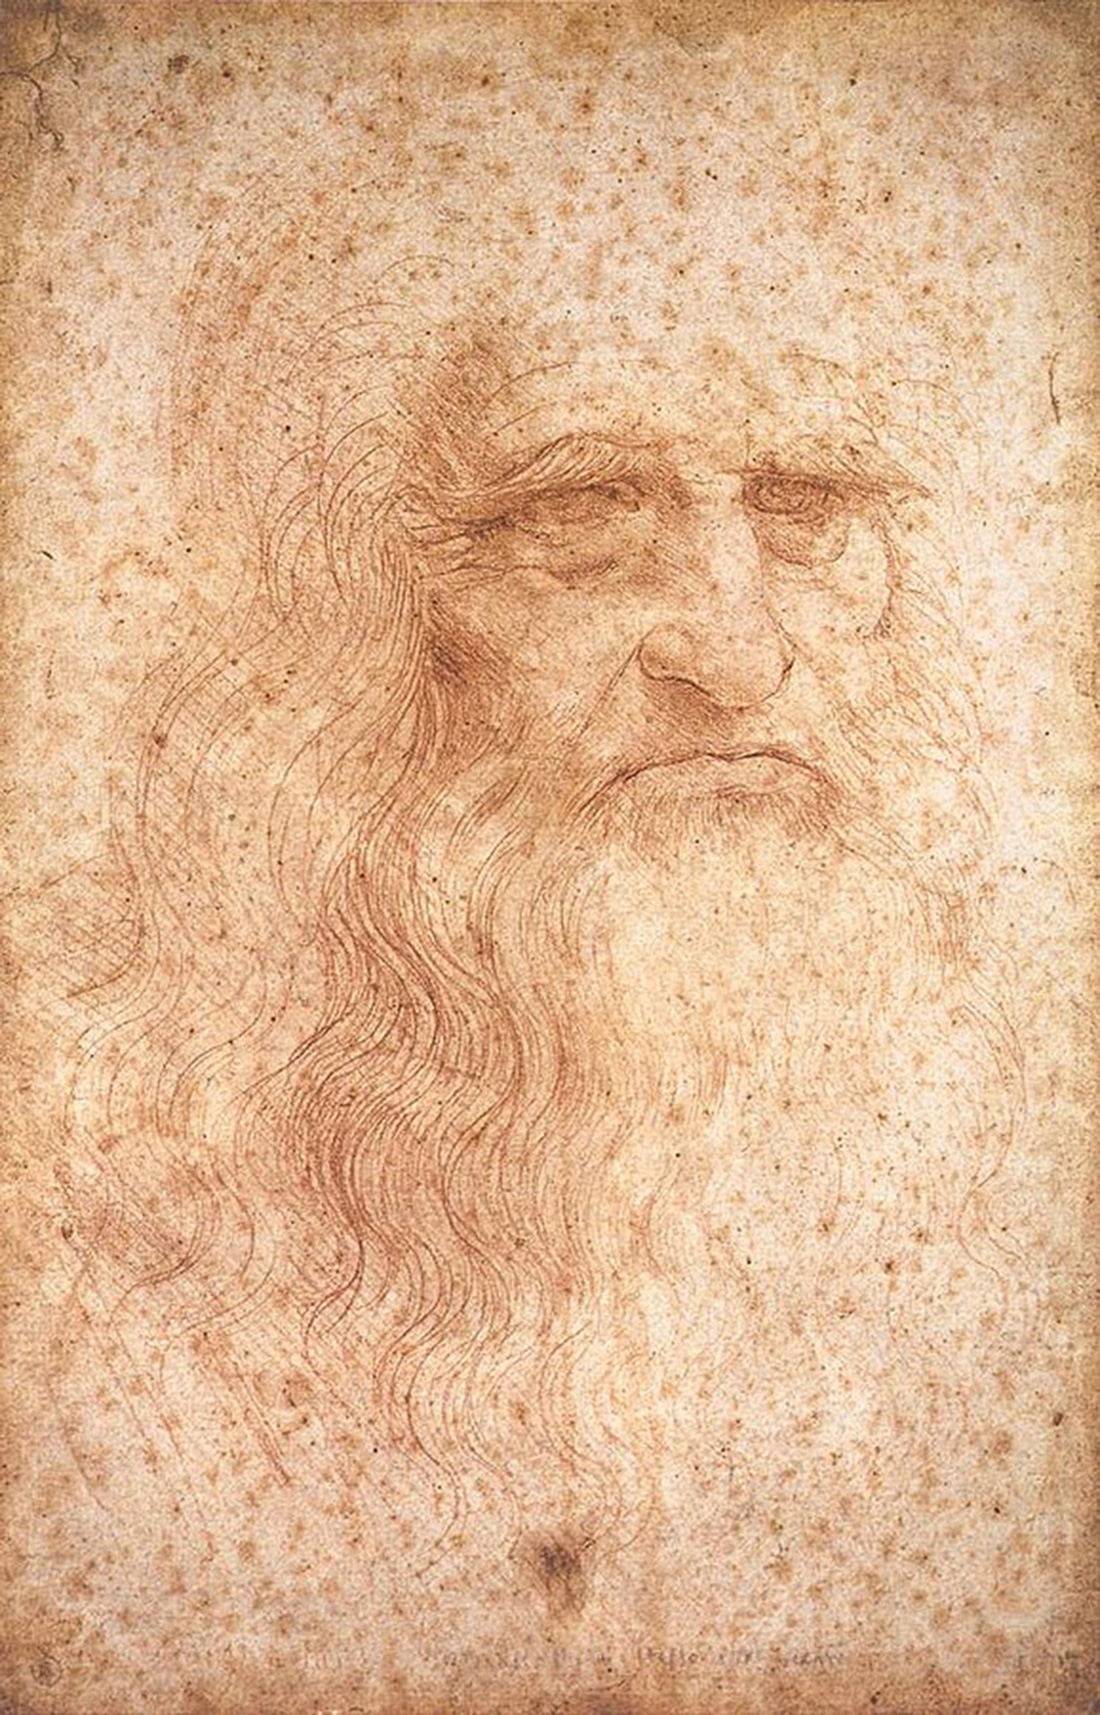 Thiên tài Leonardo da Vinci ‘đến’… ga Hà Nội - Ảnh 5.